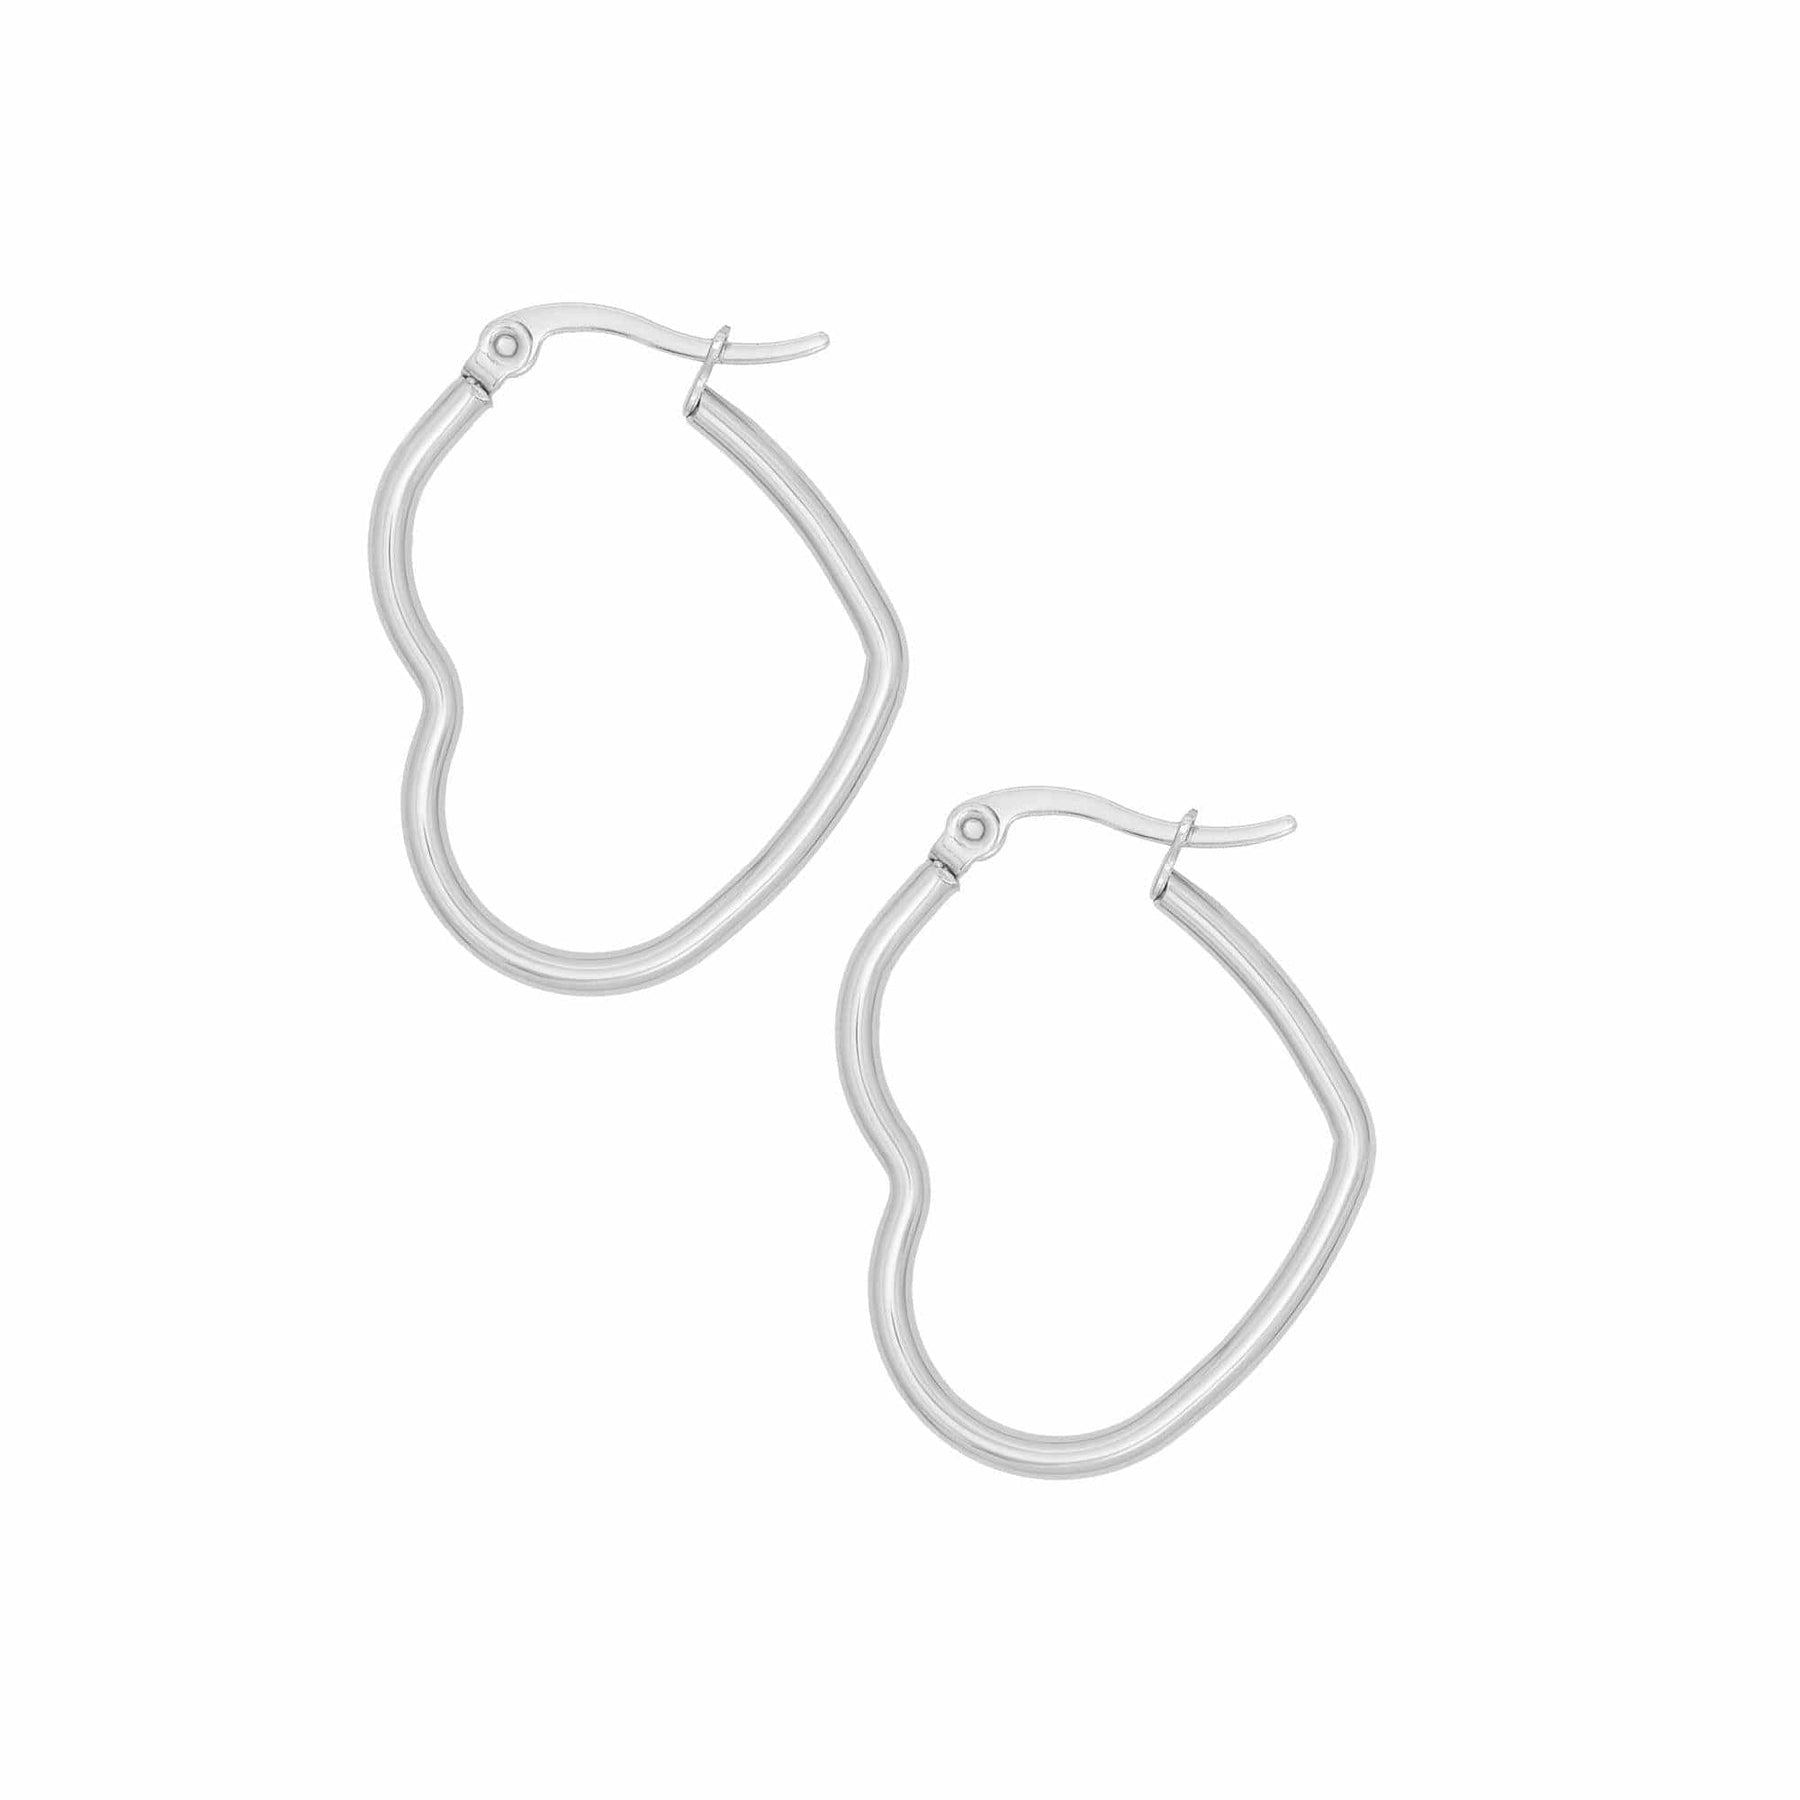 BohoMoon Stainless Steel Mini Heart Hoop Earrings Silver